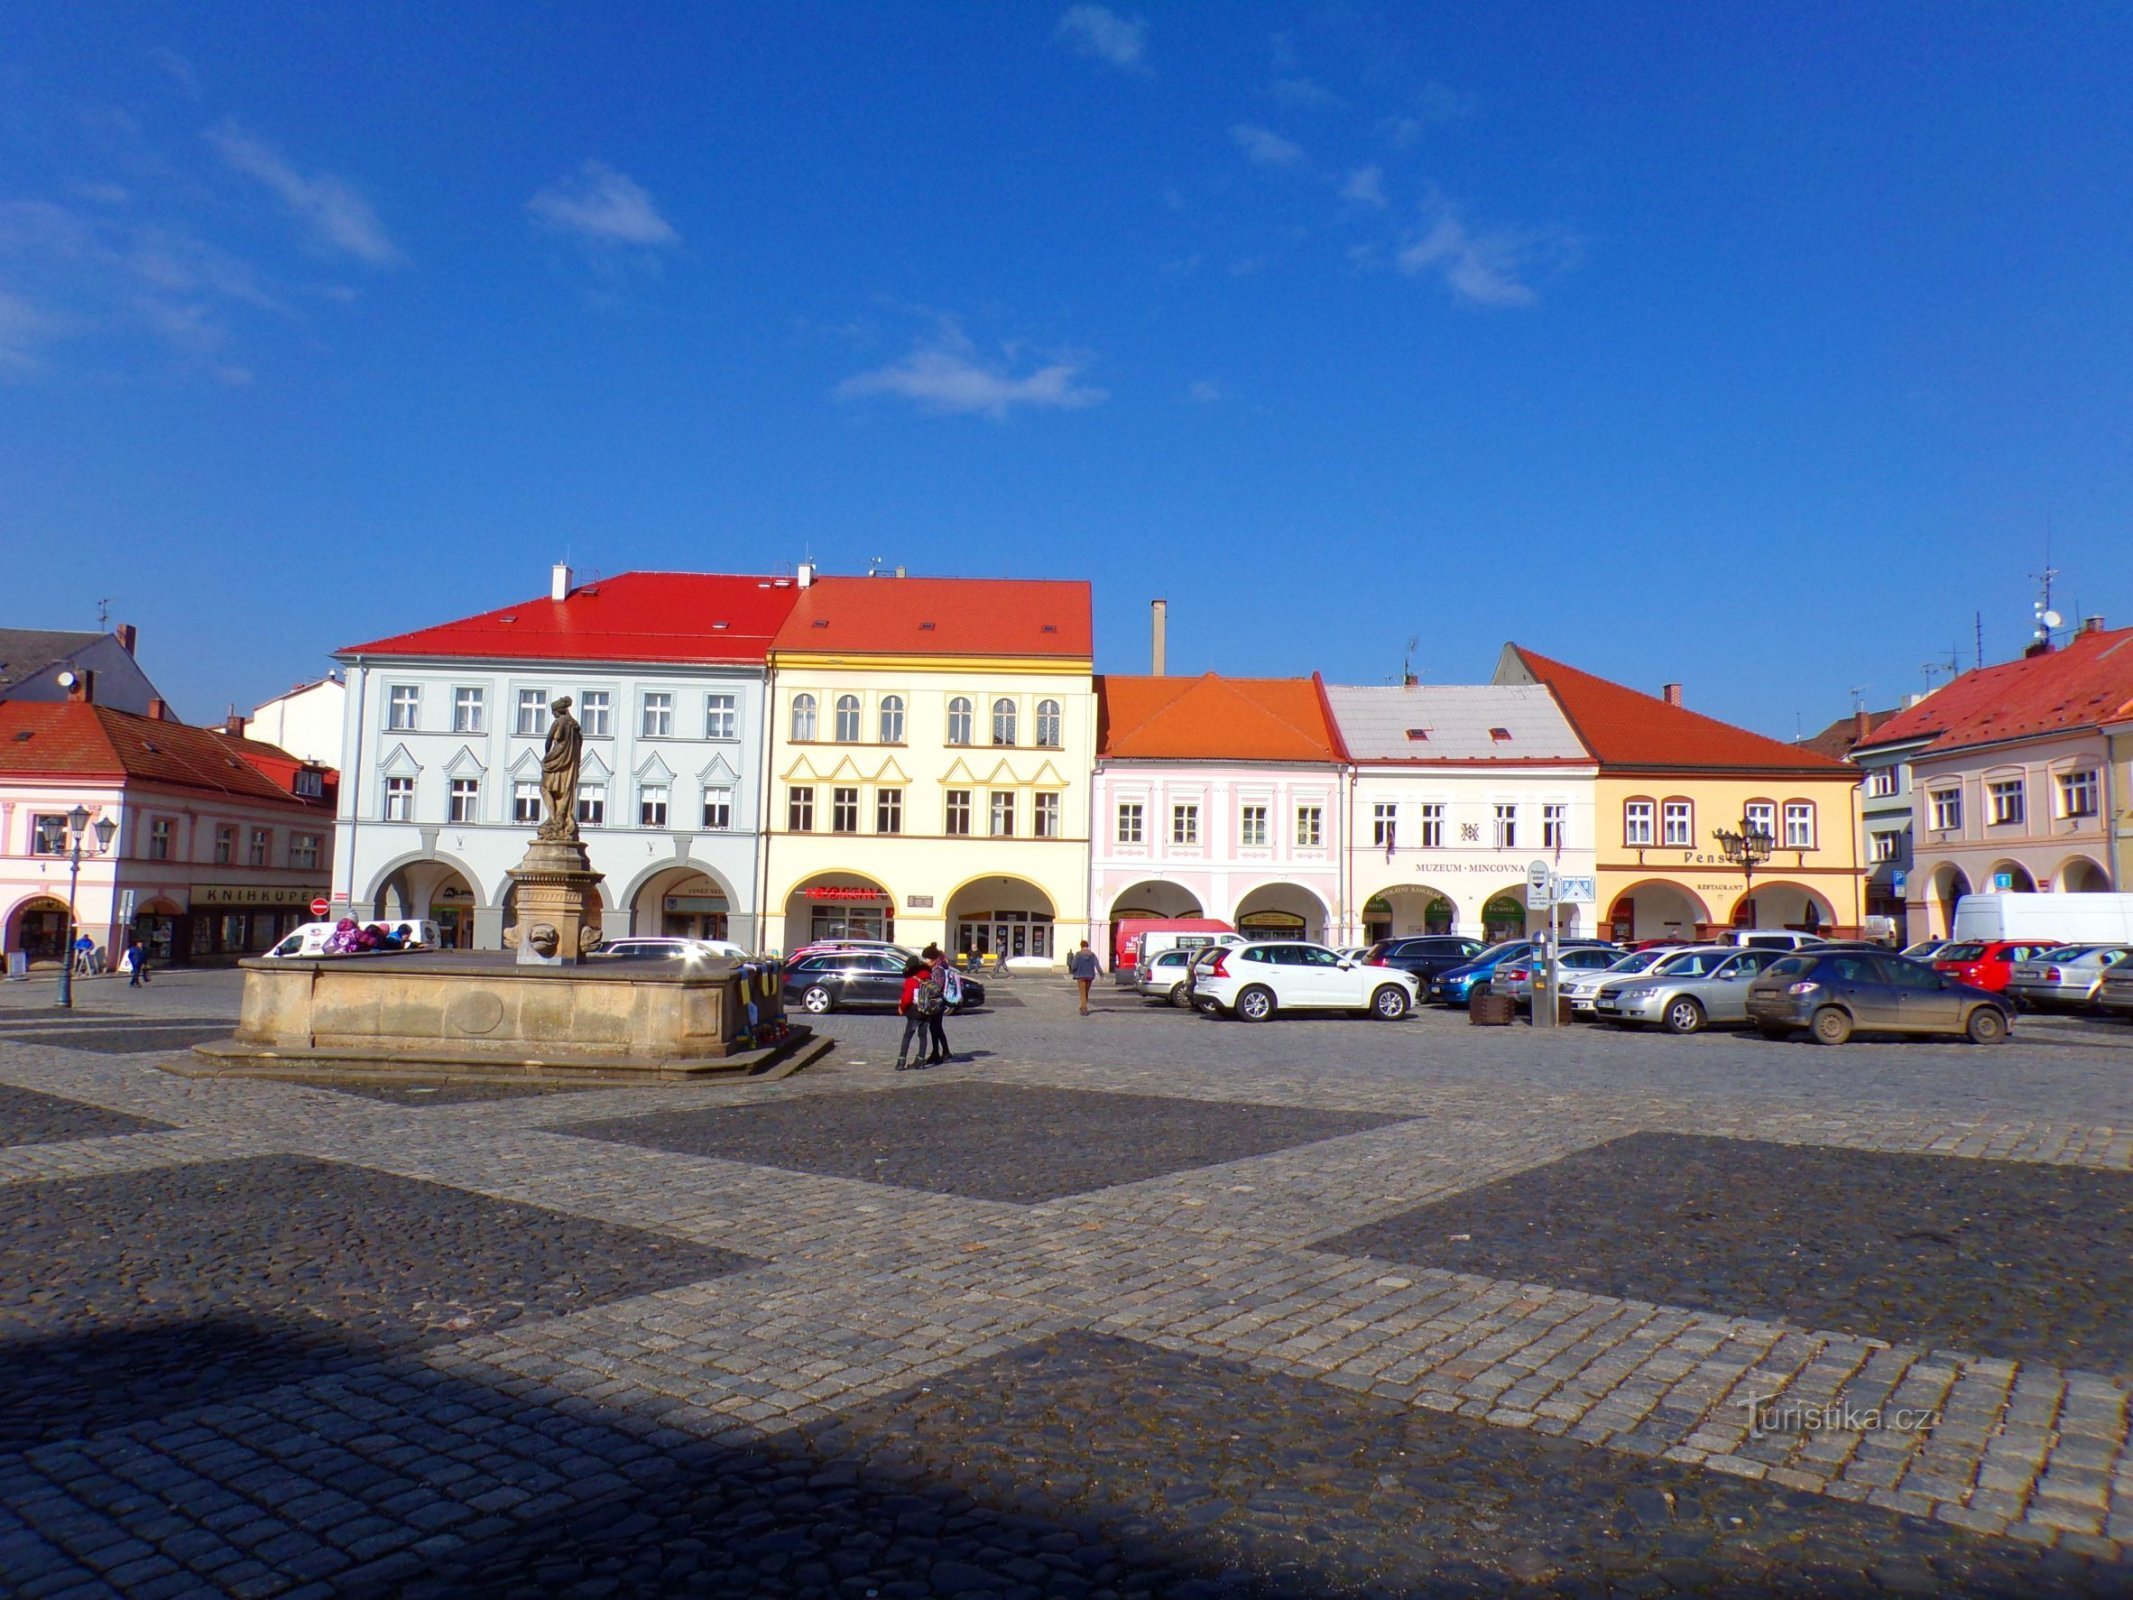 Palackého nro 73 - Valdštejnovo náměstí nro 77 (Jičín, 3.3.2022)